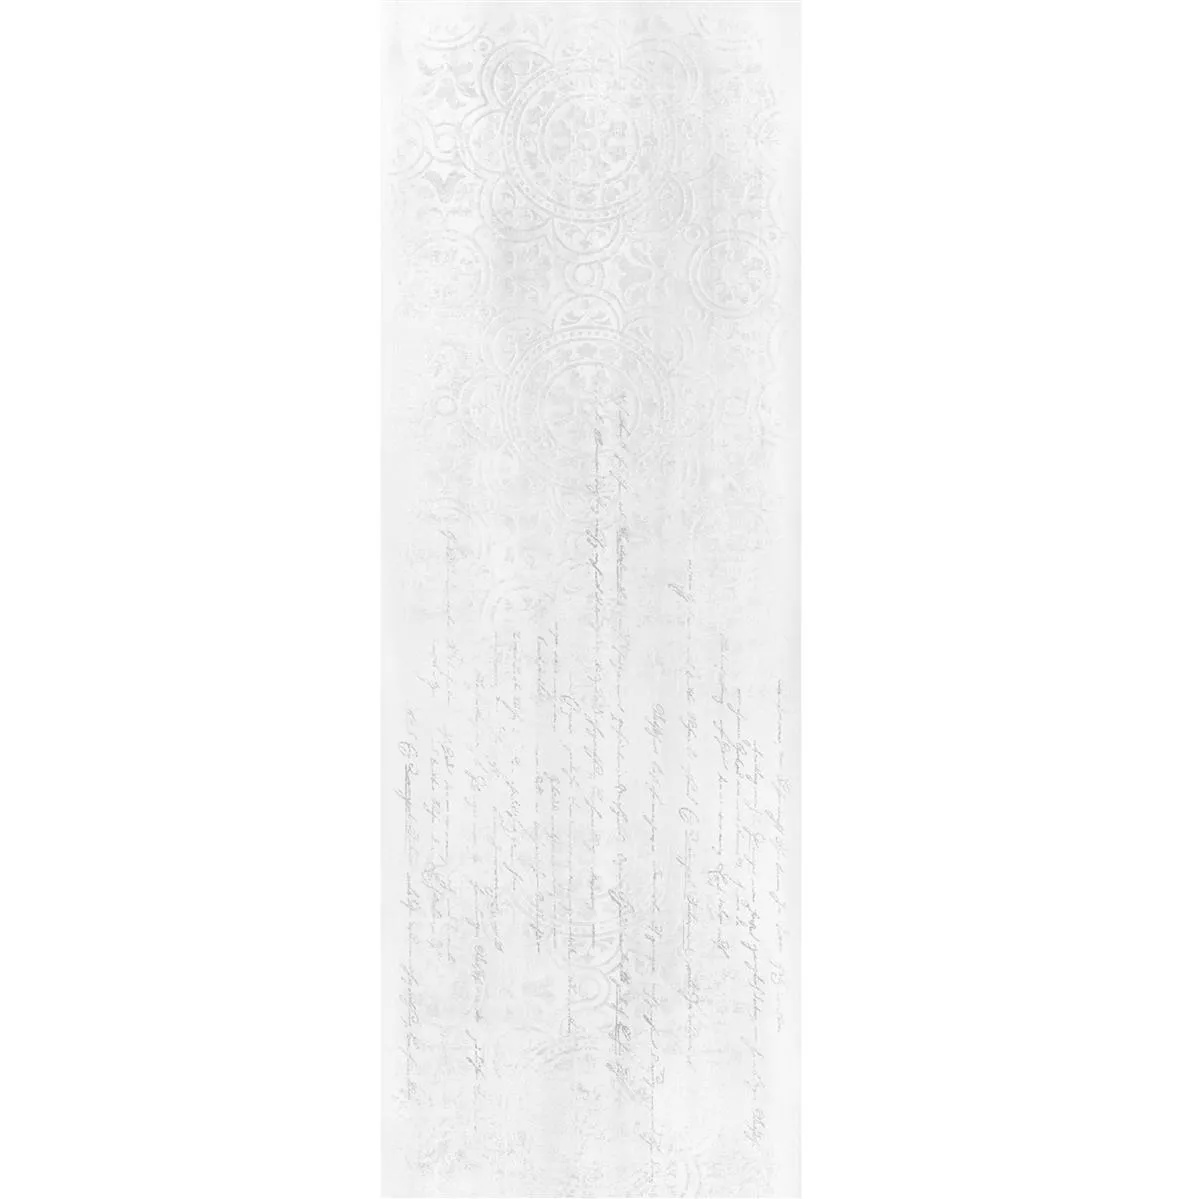 Zidne Pločica Anderson Prirodni rub 30x90cm Bijela Dekoracija